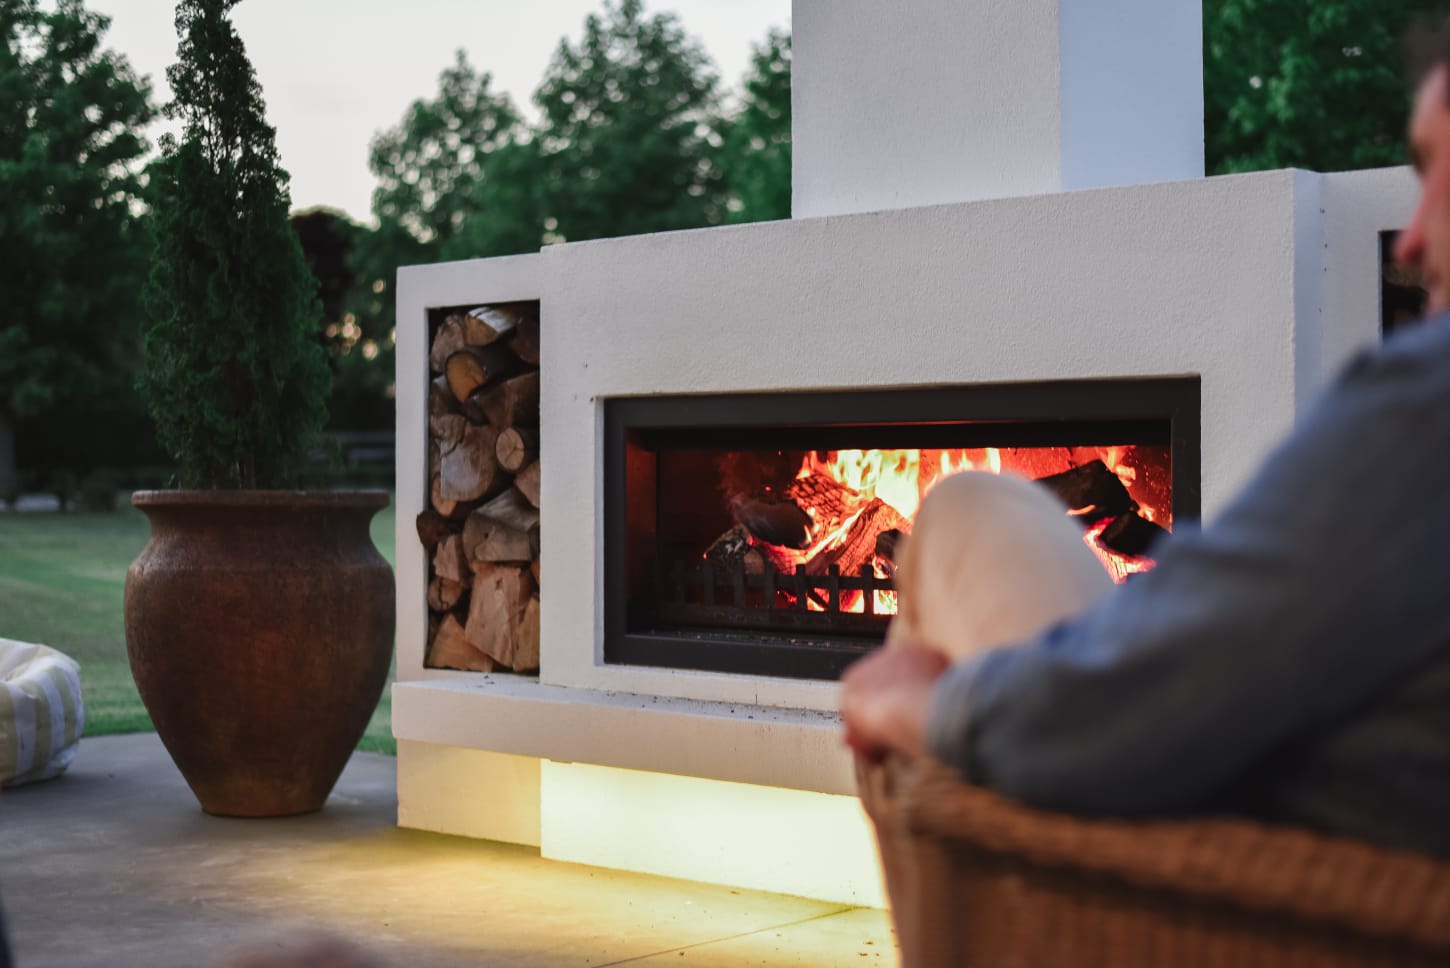 Top outdoor fireplace trends